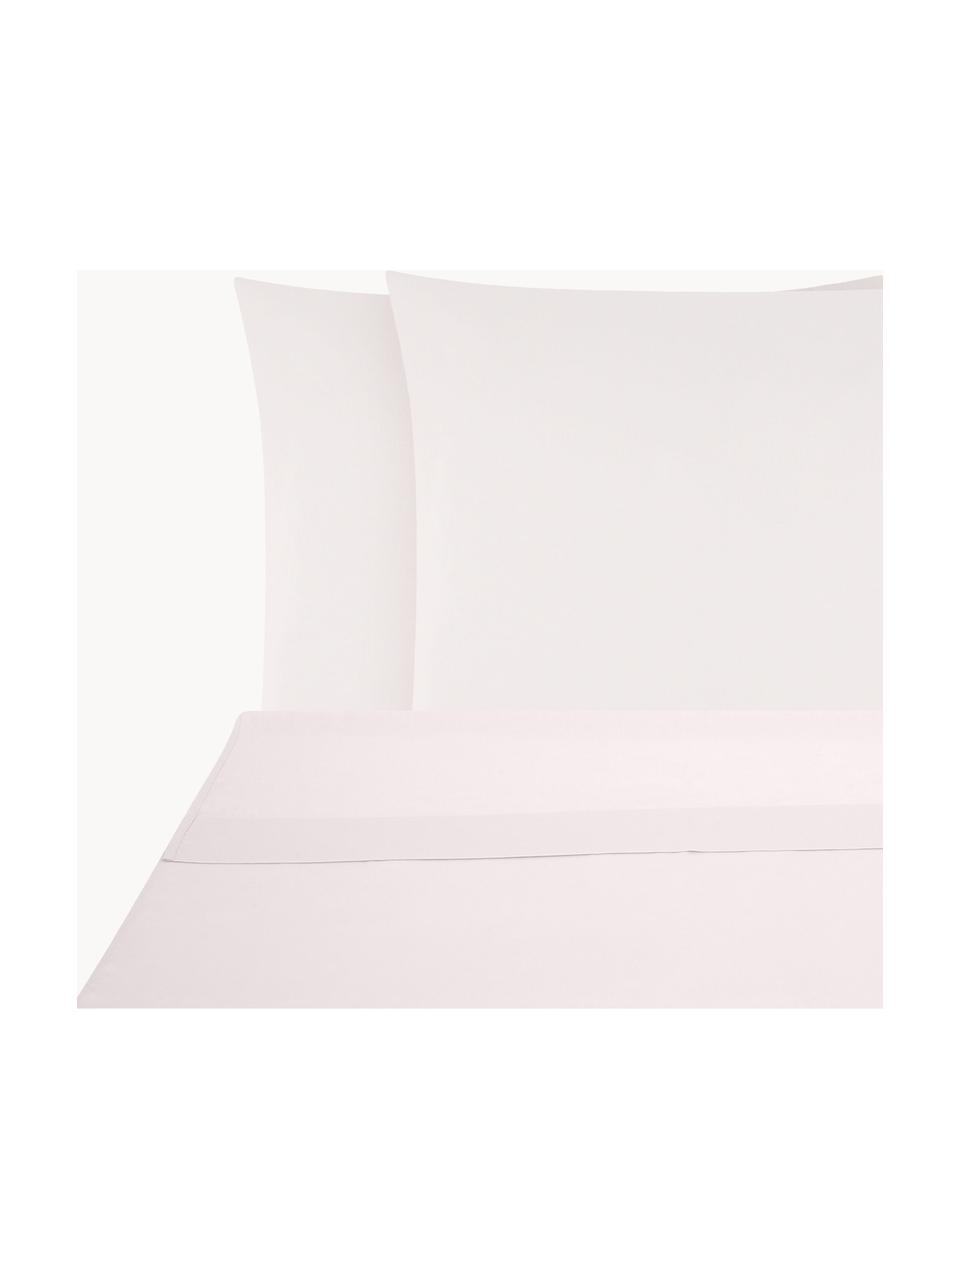 Biancheria da letto rosa in raso di cotone Comfort, Tessuto: raso Densità del filo 250, Rosa chiaro, 240 x 300 cm + 2 federe 50 x 80 cm